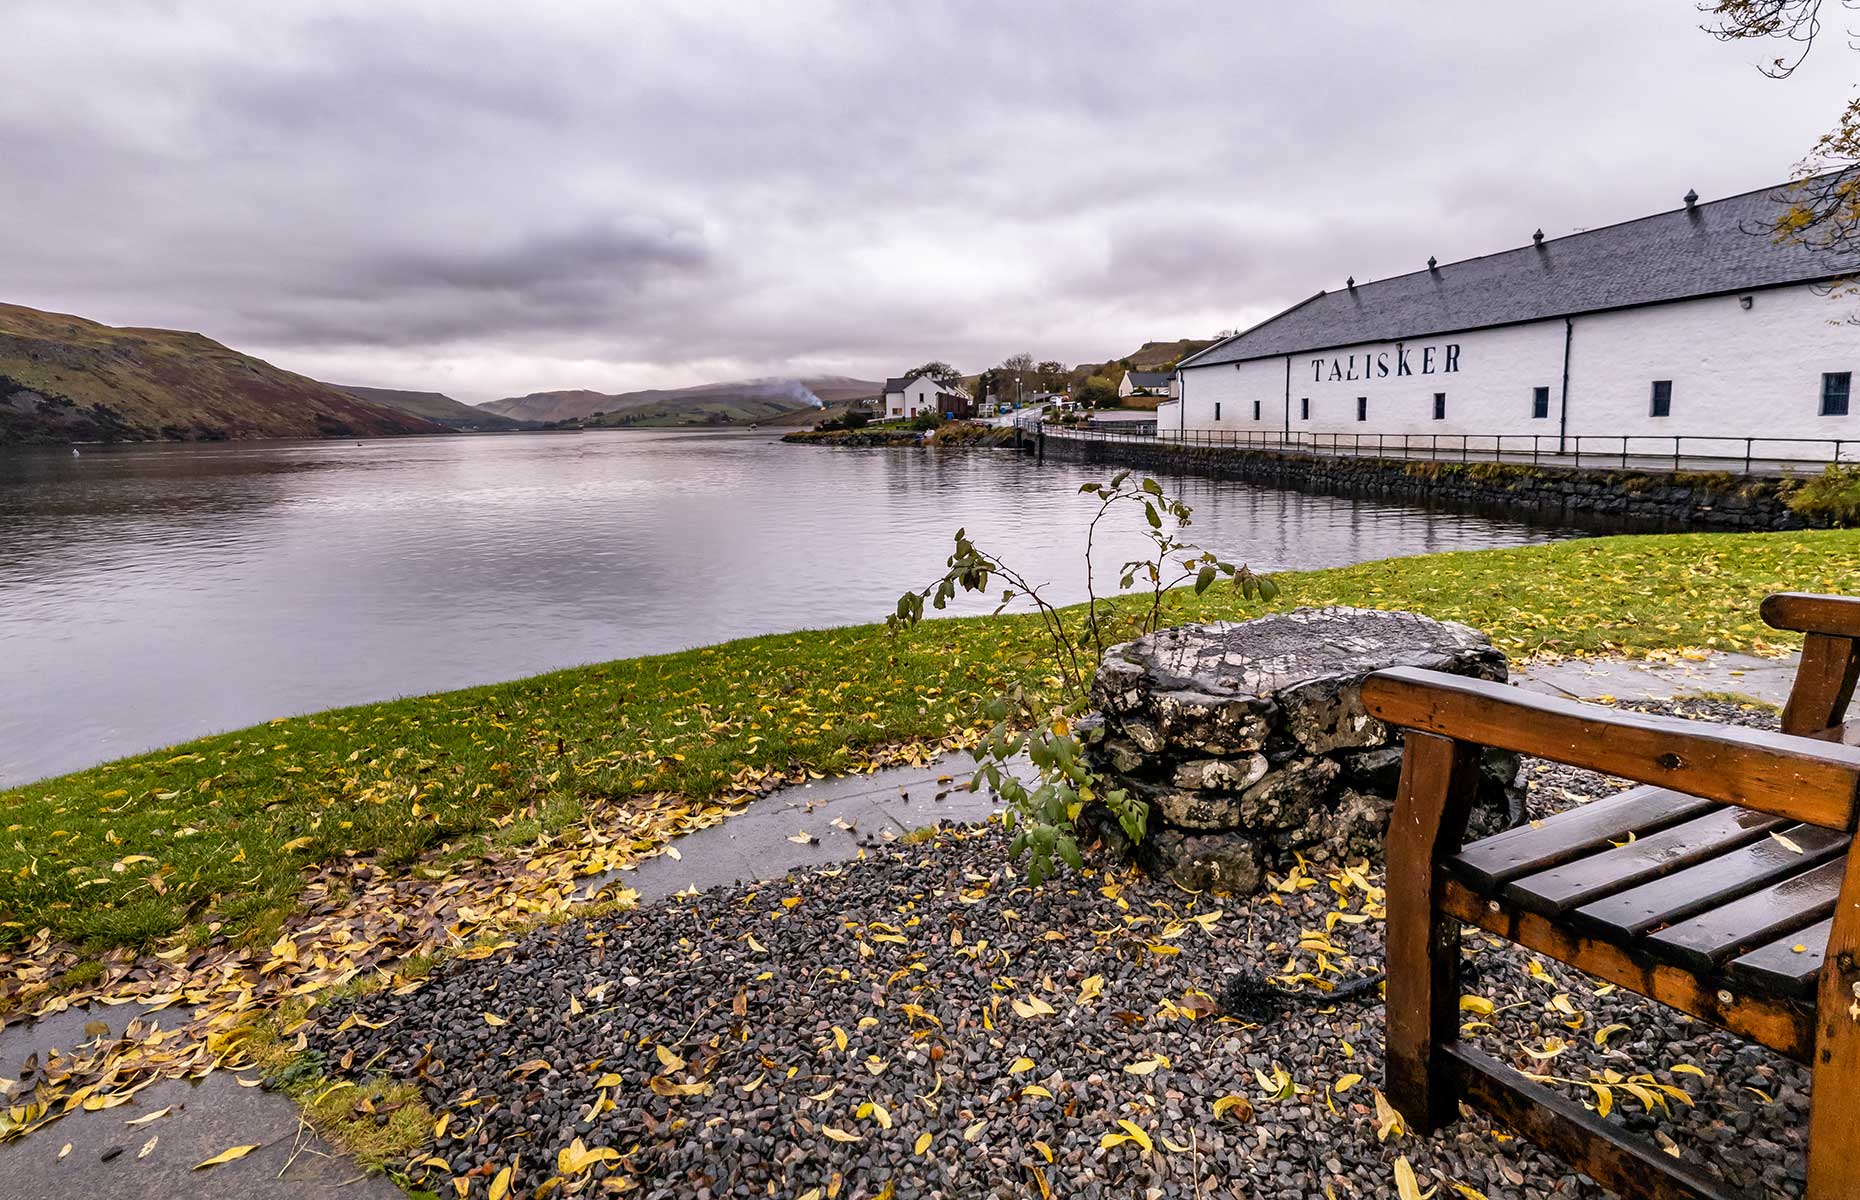 Taliskerr, Isle of Skye (Image: Lukassek/Shutterstock)